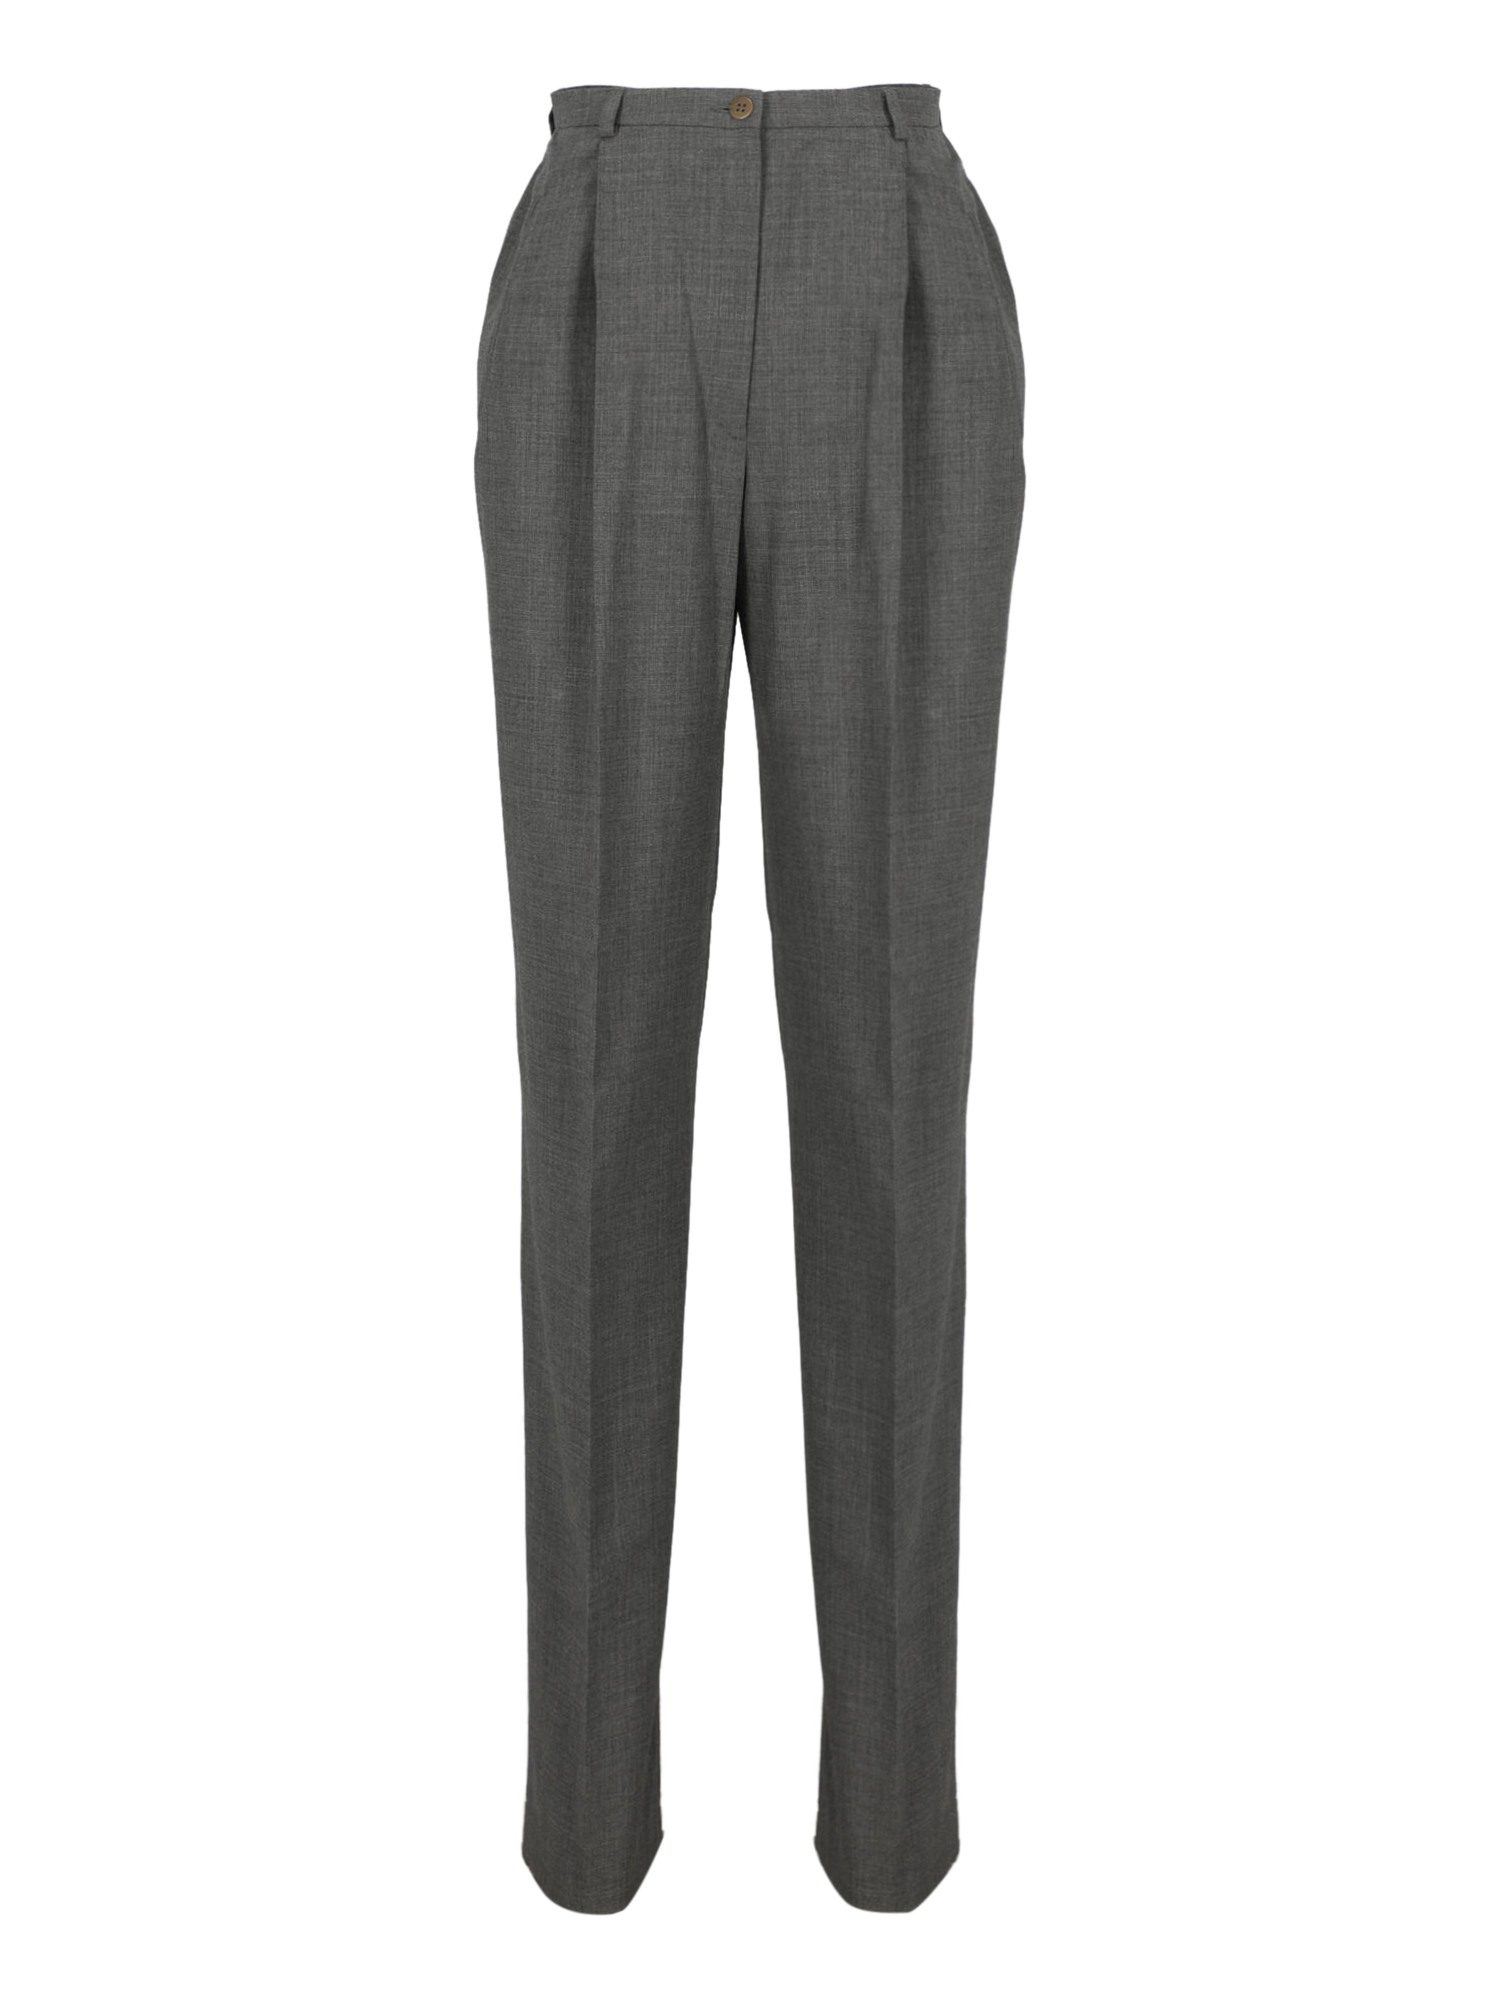 Pantalons Pour Femme - Giorgio Armani - En Wool Grey - Taille:  -